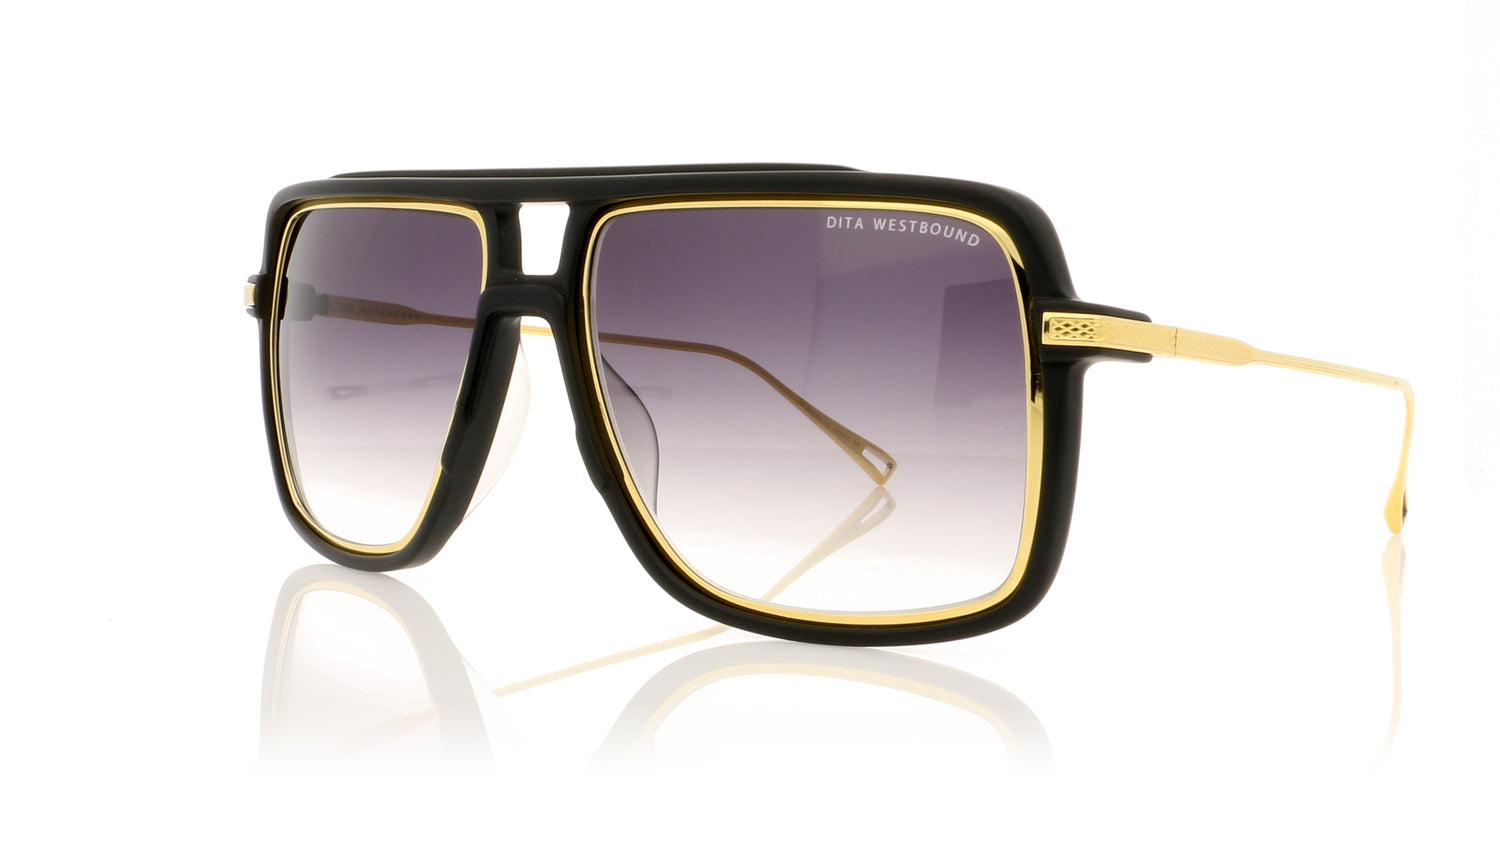 DITA Westbound 19015 A Matte black Sunglasses - Angle